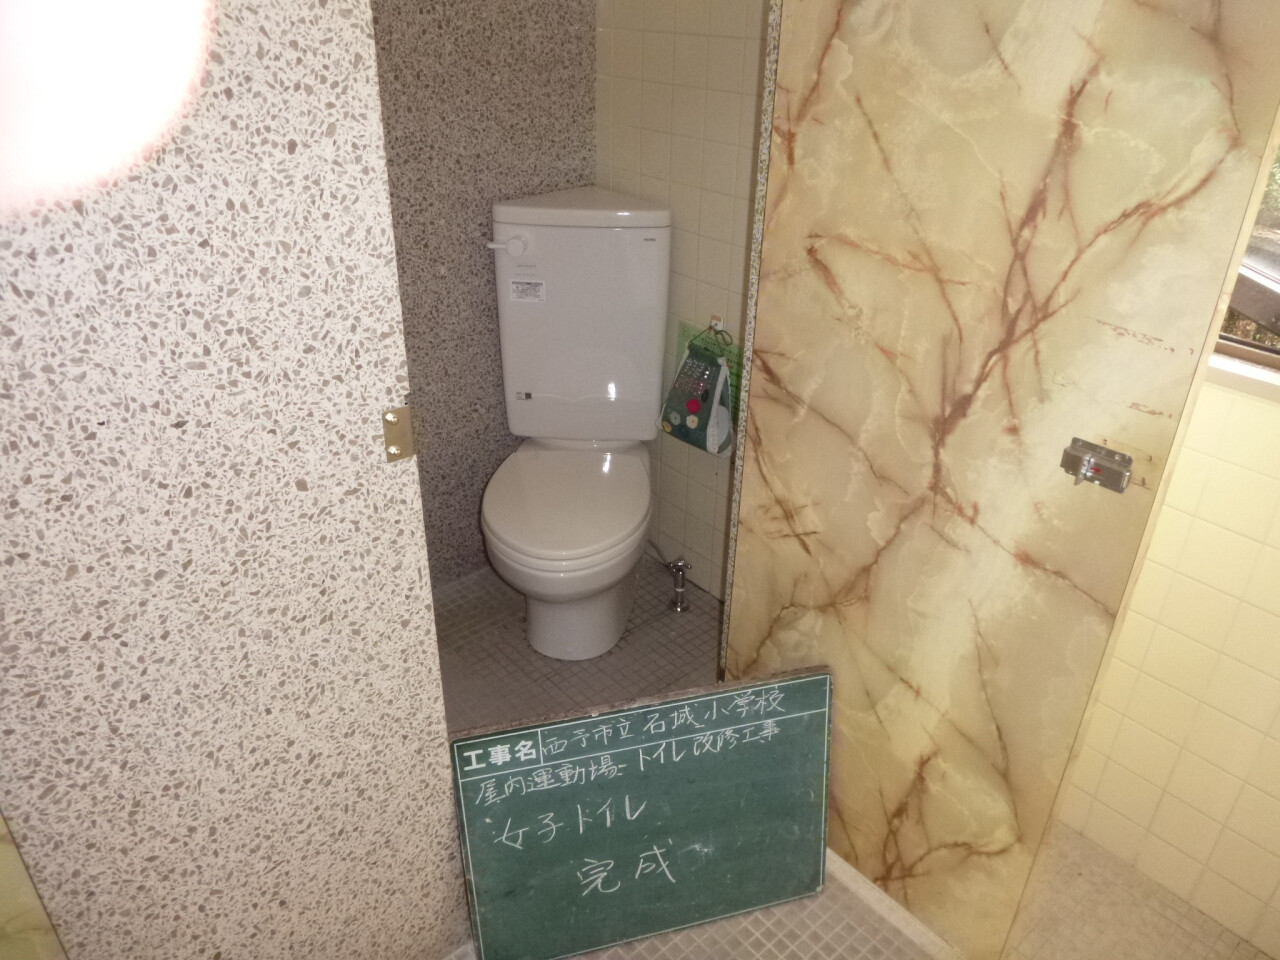 ○○小学校屋内運動場トイレ改修工事